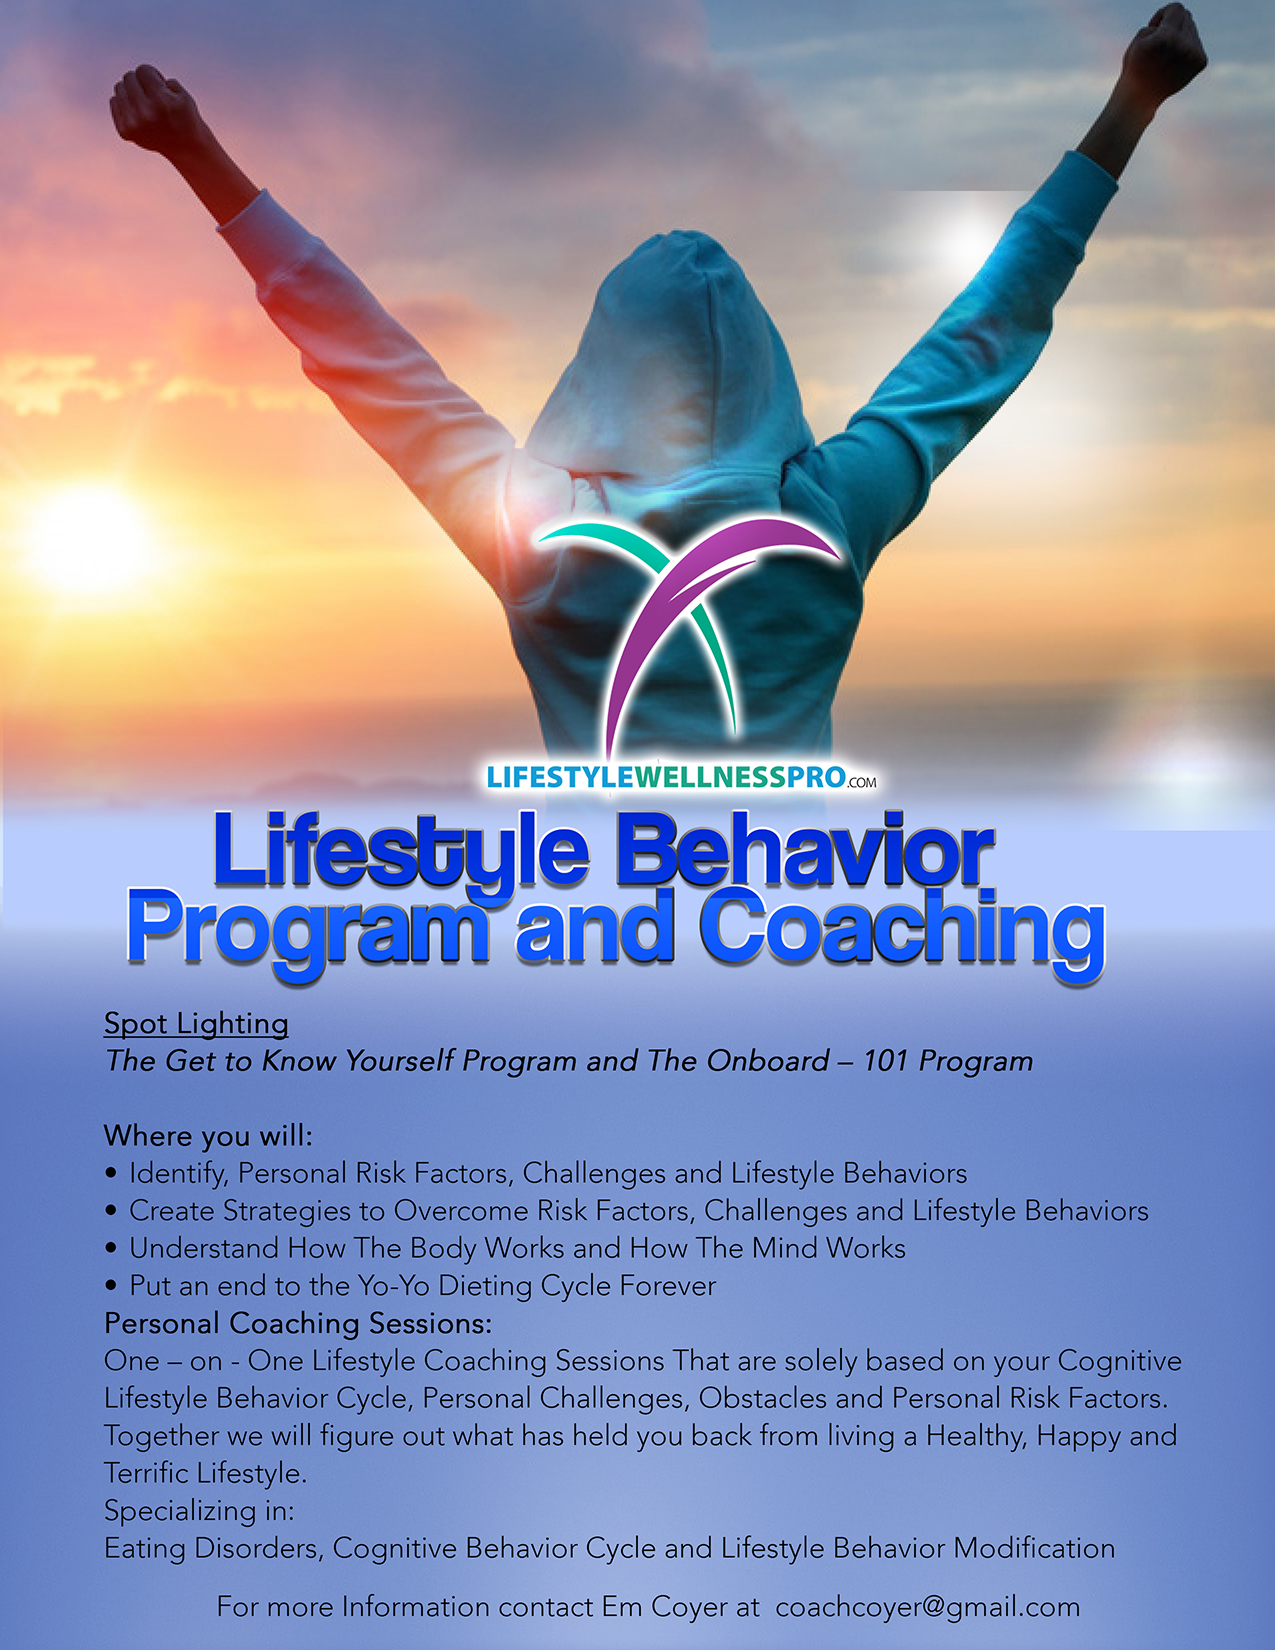 coaching program